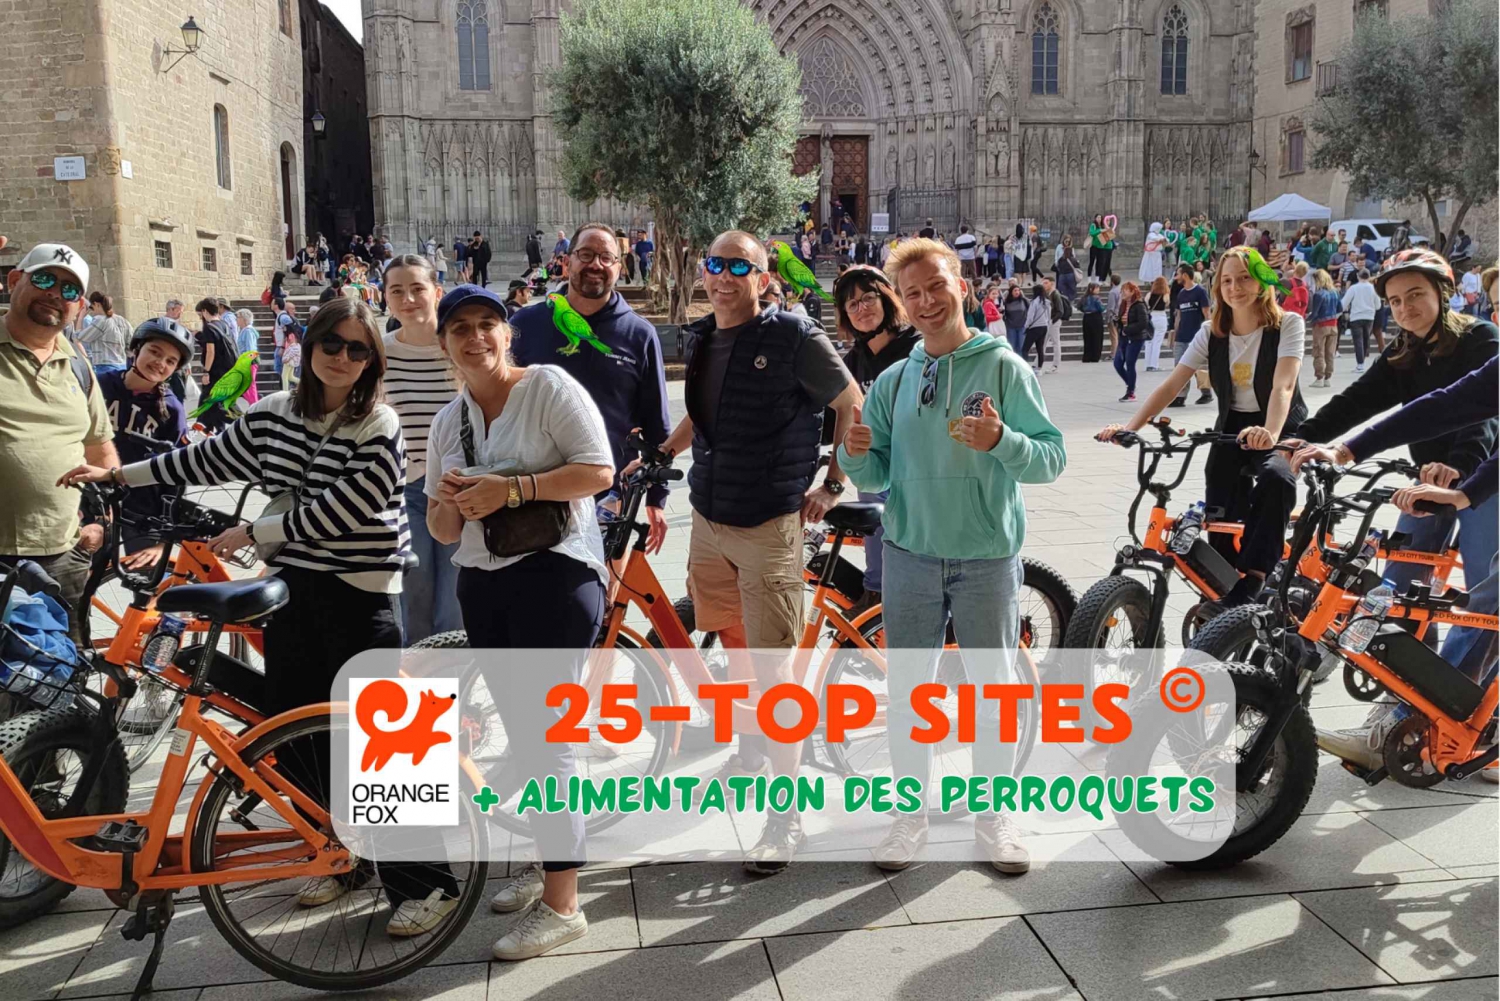 Barcelona Tour💕 med fransk guide 25-тop sites, bike/ebike